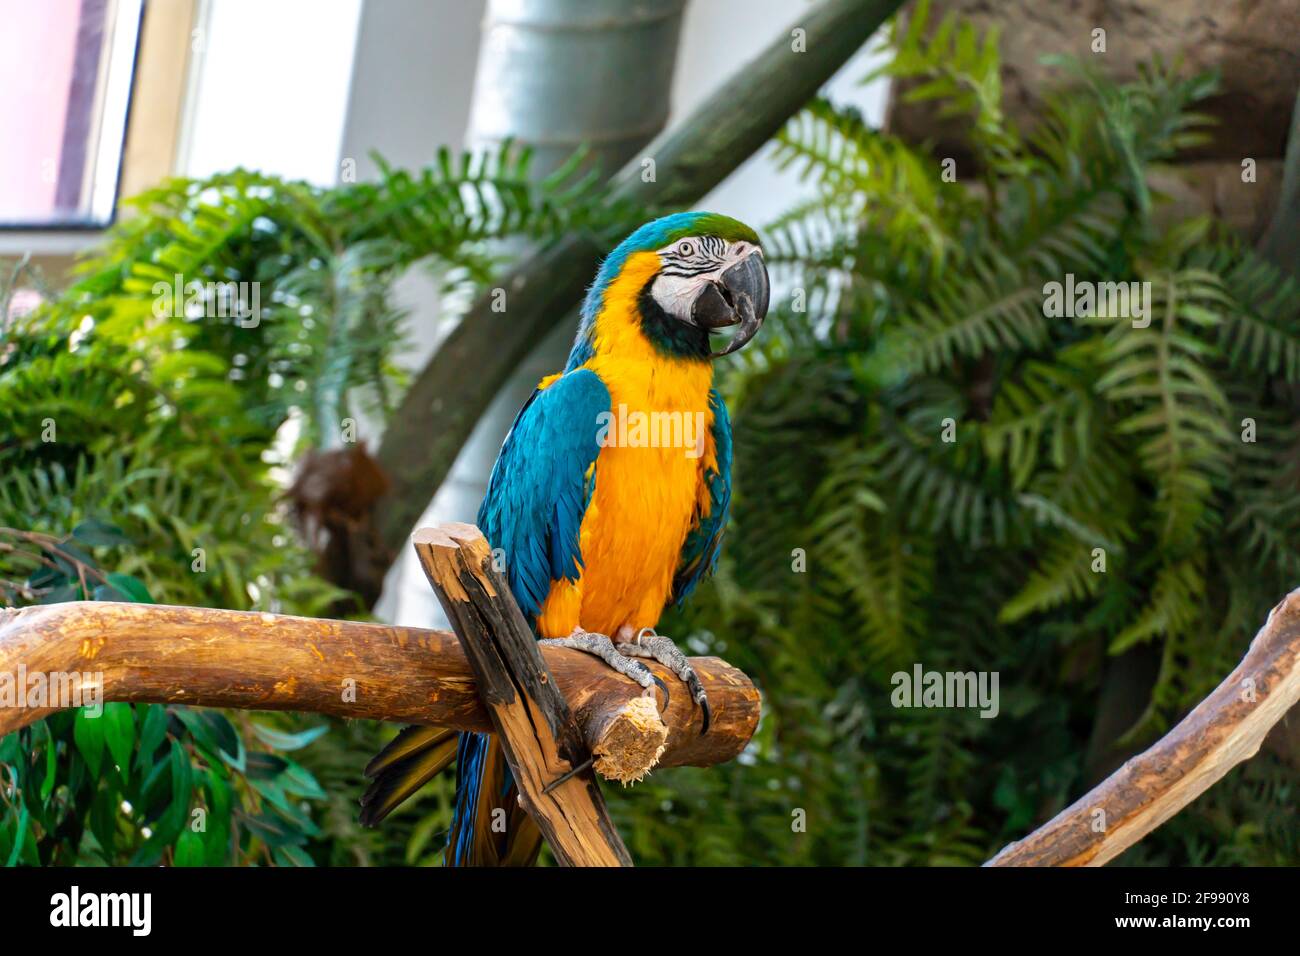 Blau-gelber Ara-Papagei mit einem riesigen Schnabel Nahaufnahme der Kamera Stockfoto